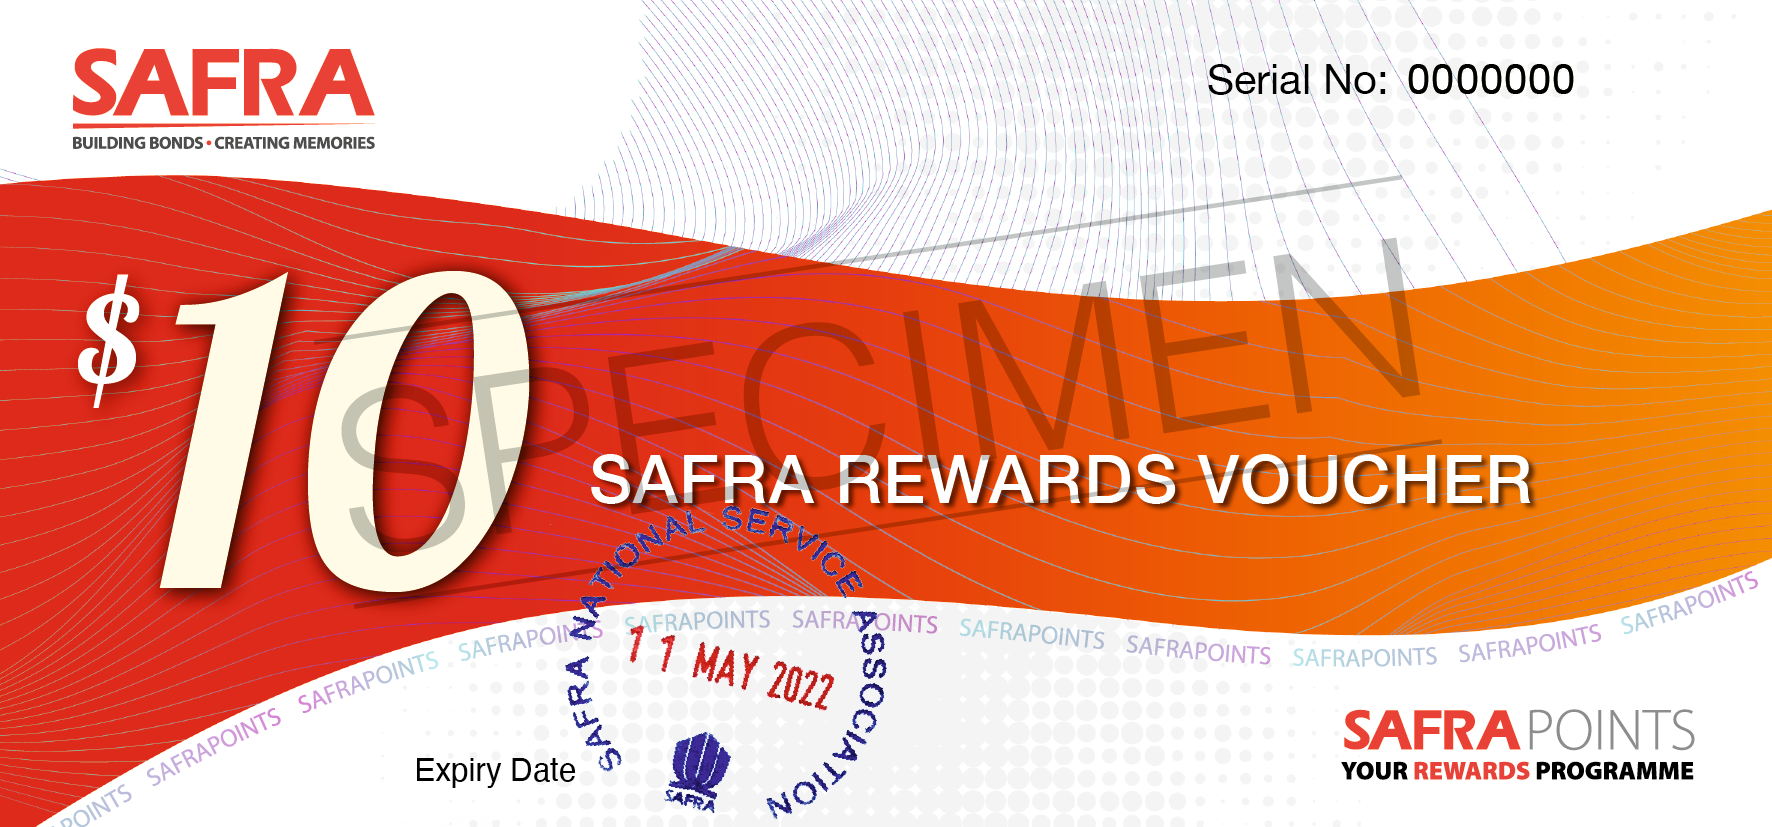 SAFRA Rewards Voucher